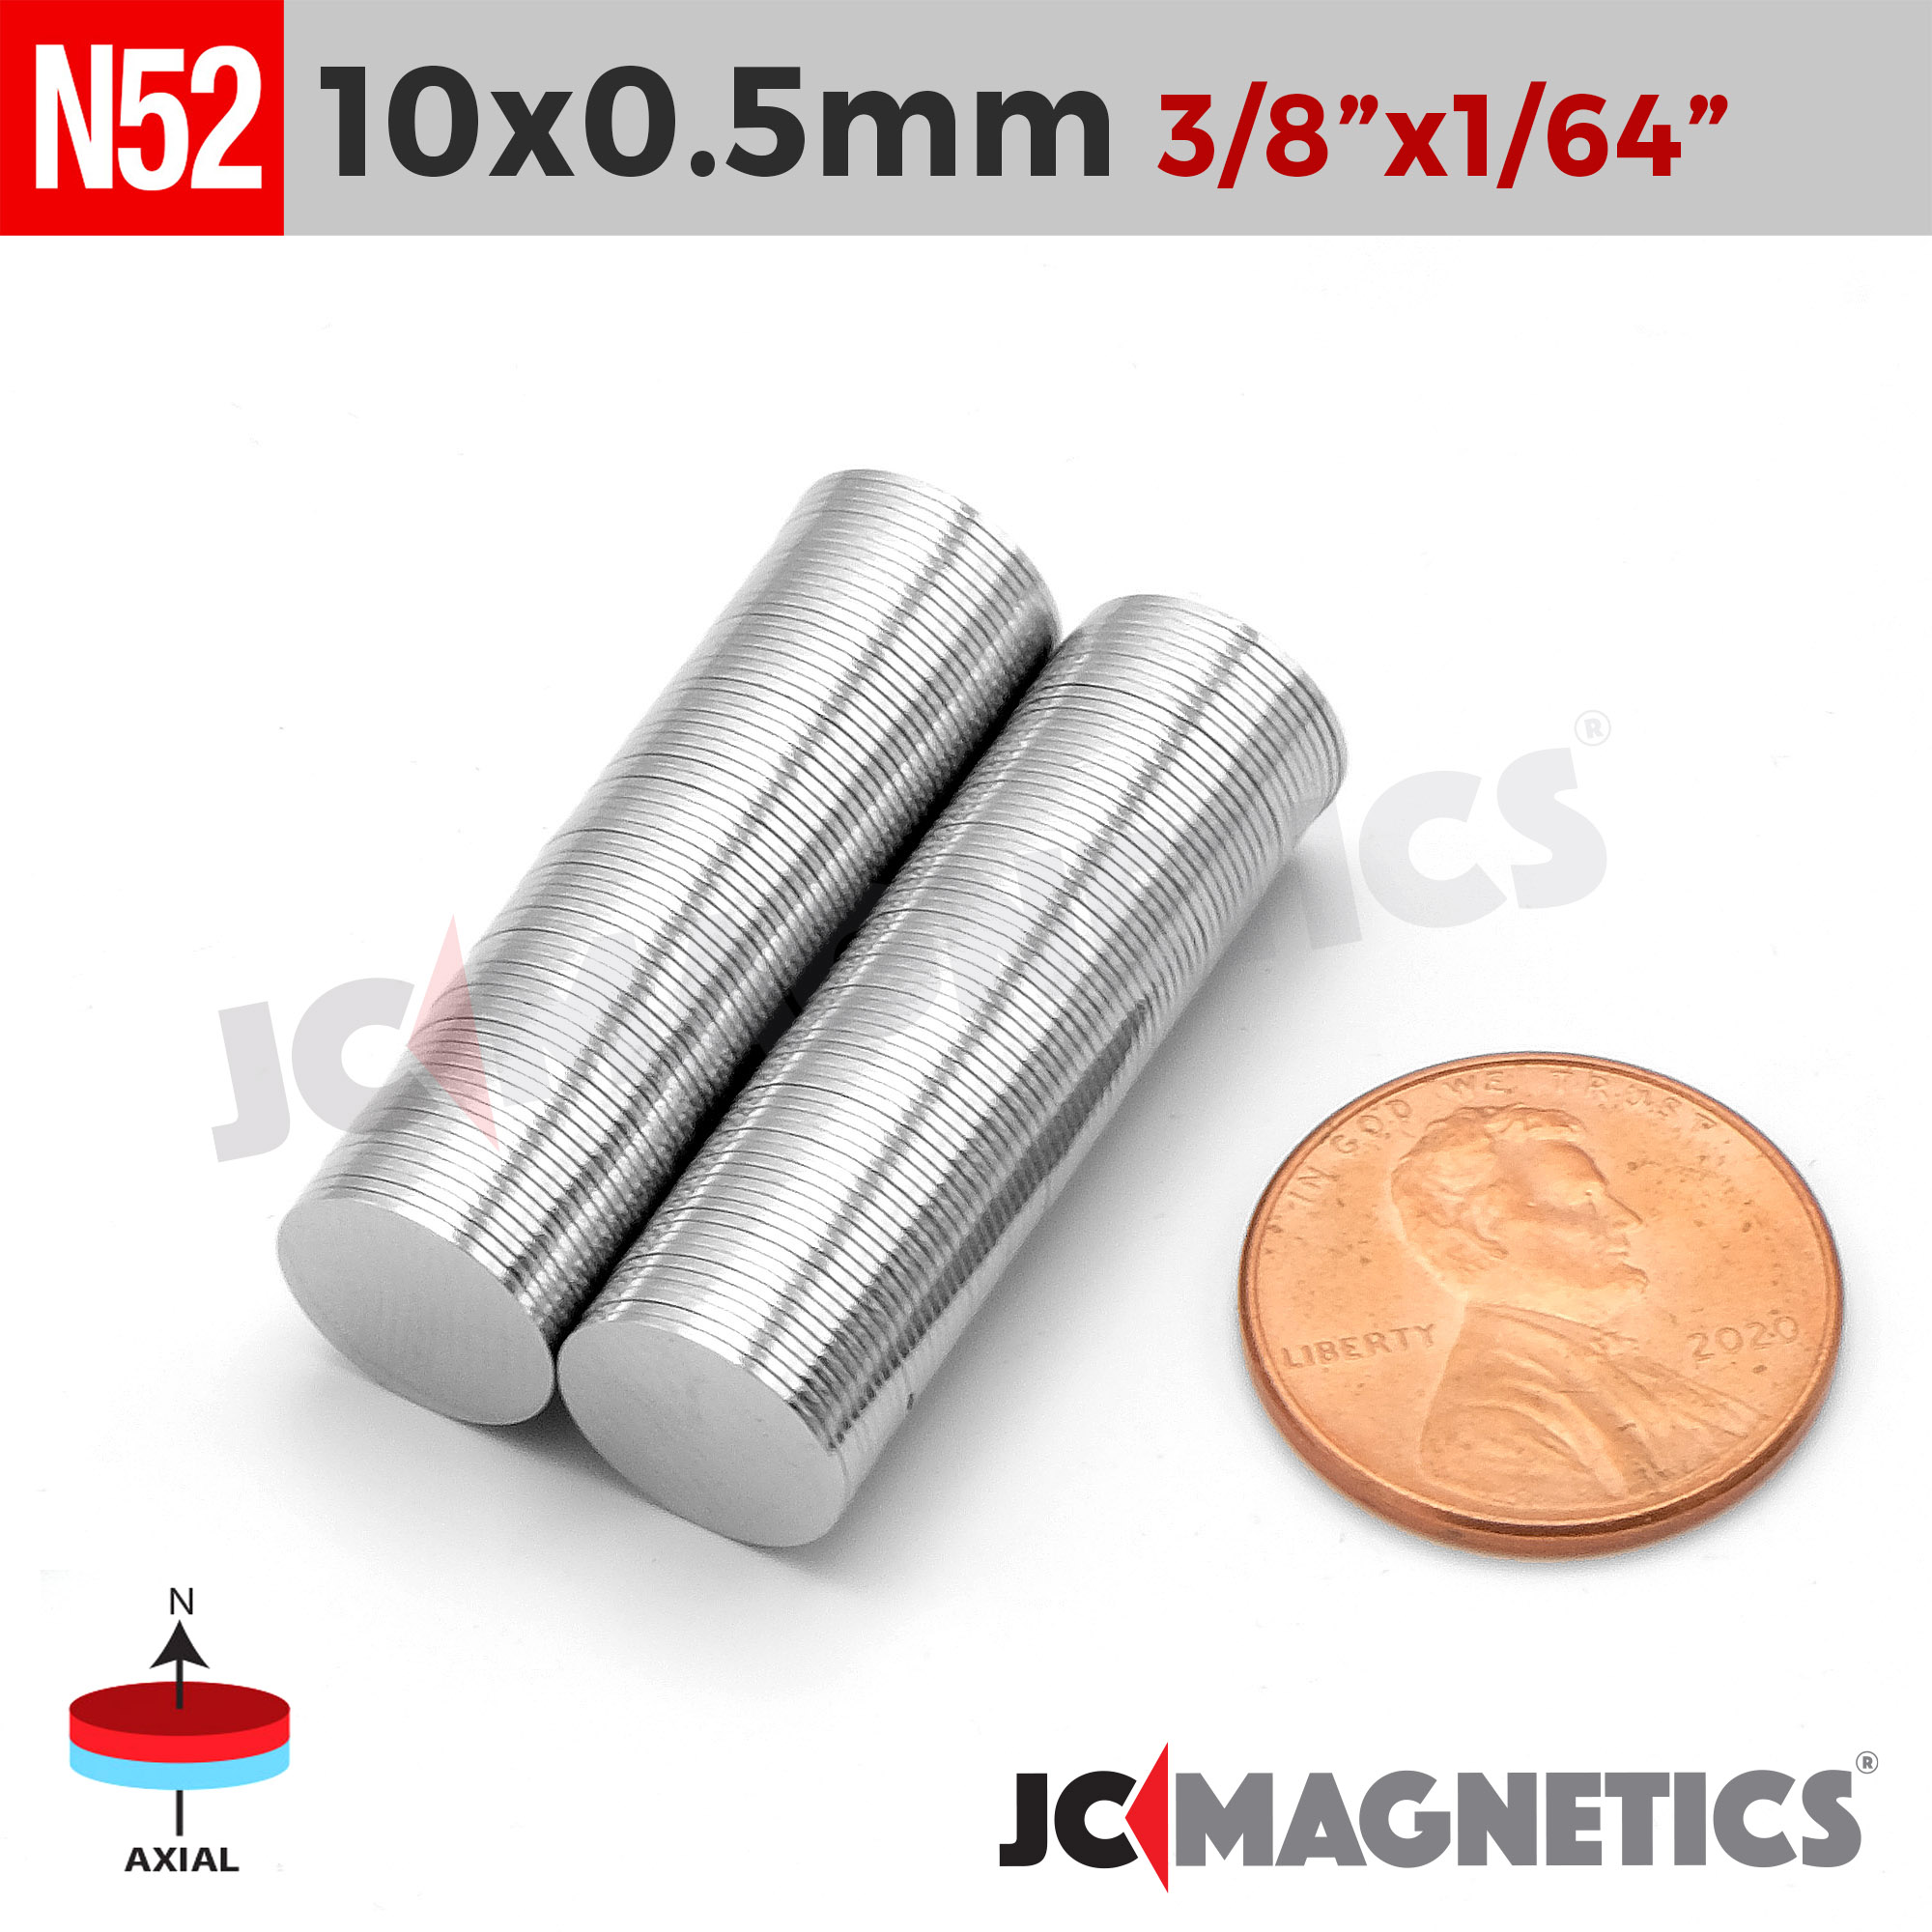 Magnet N52 Neodymium Magnets, N52 Neodymium Magnets 10